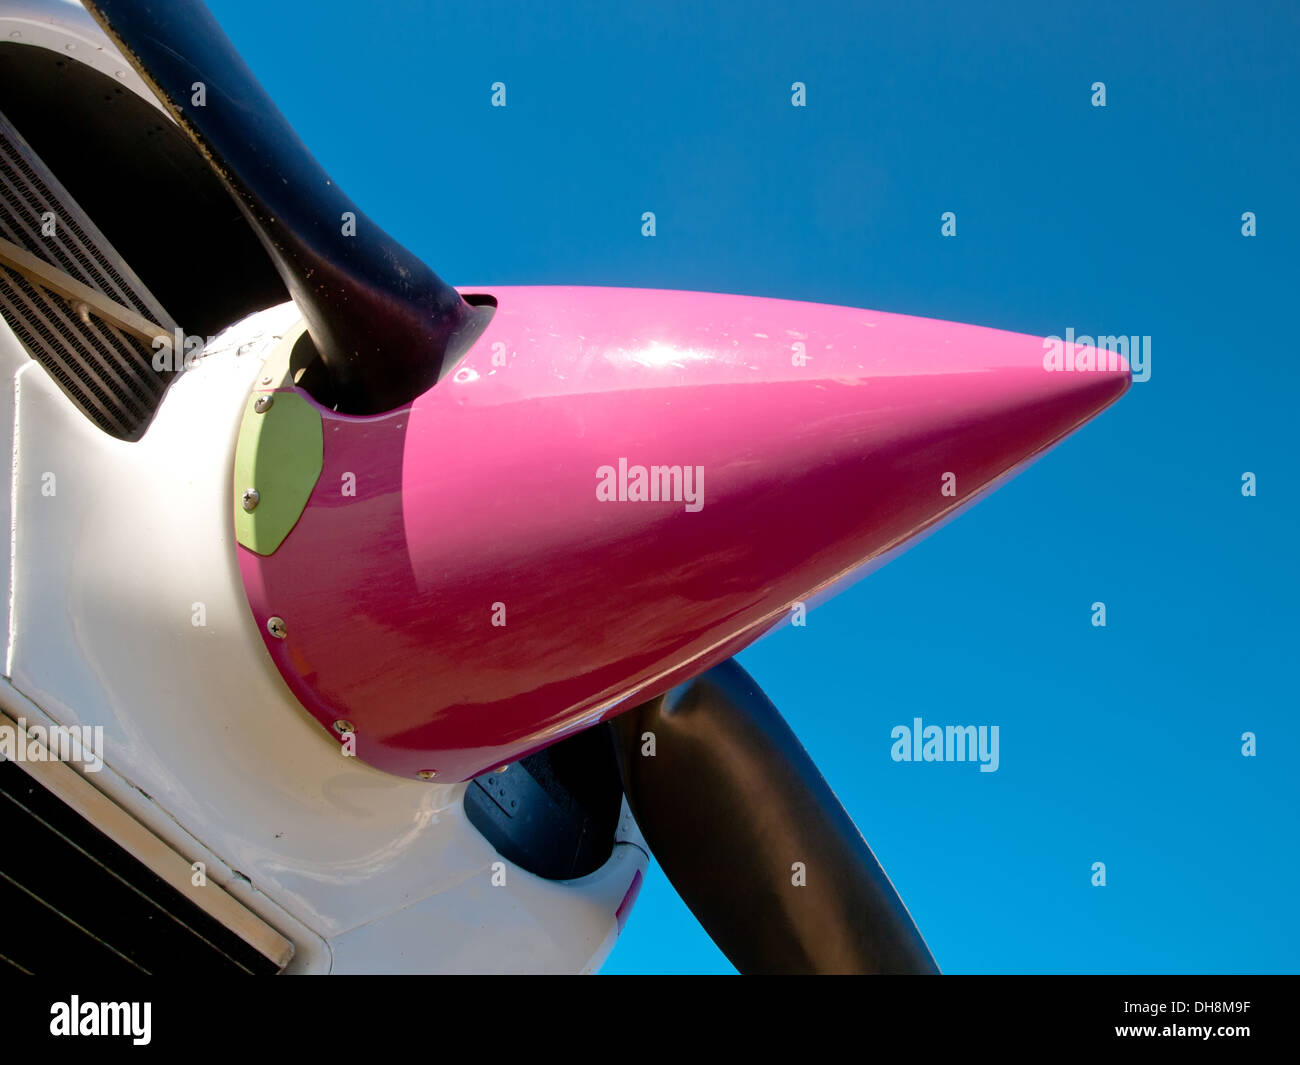 Dettaglio del naso aereo con elica Foto Stock